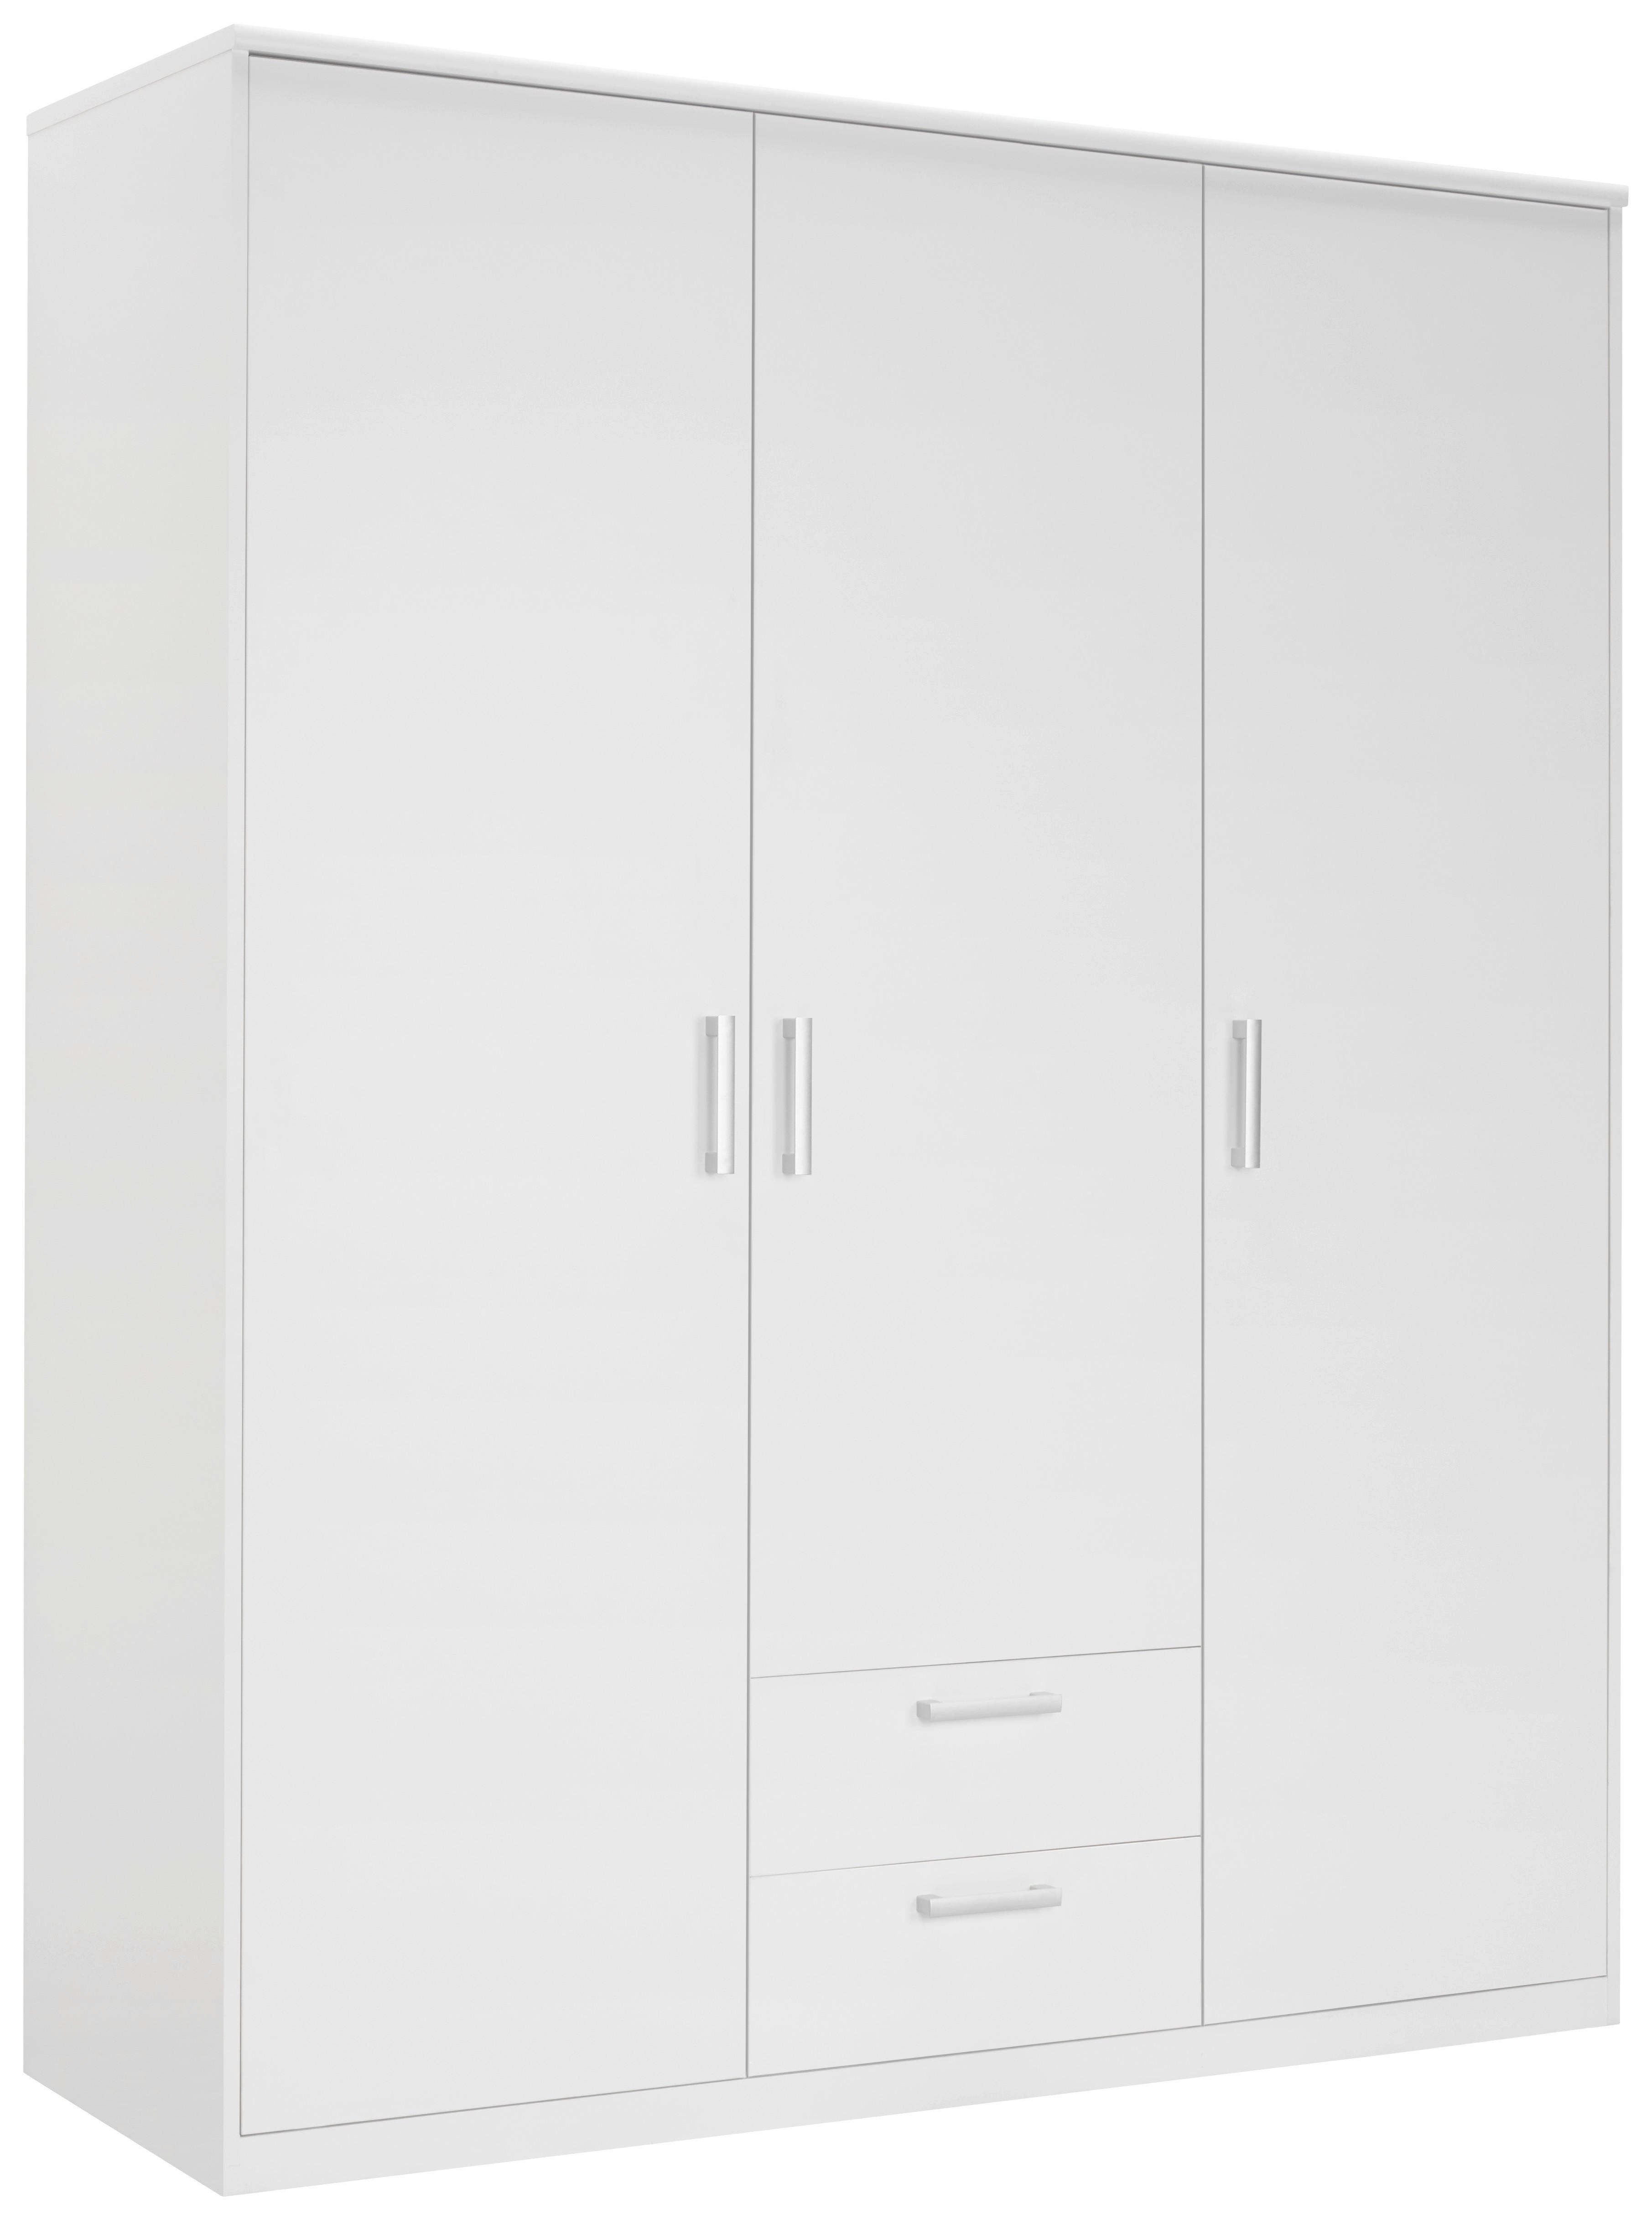 DREHTÜRENSCHRANK 3-türig Weiß  - Silberfarben/Weiß, Basics, Holzwerkstoff/Kunststoff (157/194/54cm) - Xora